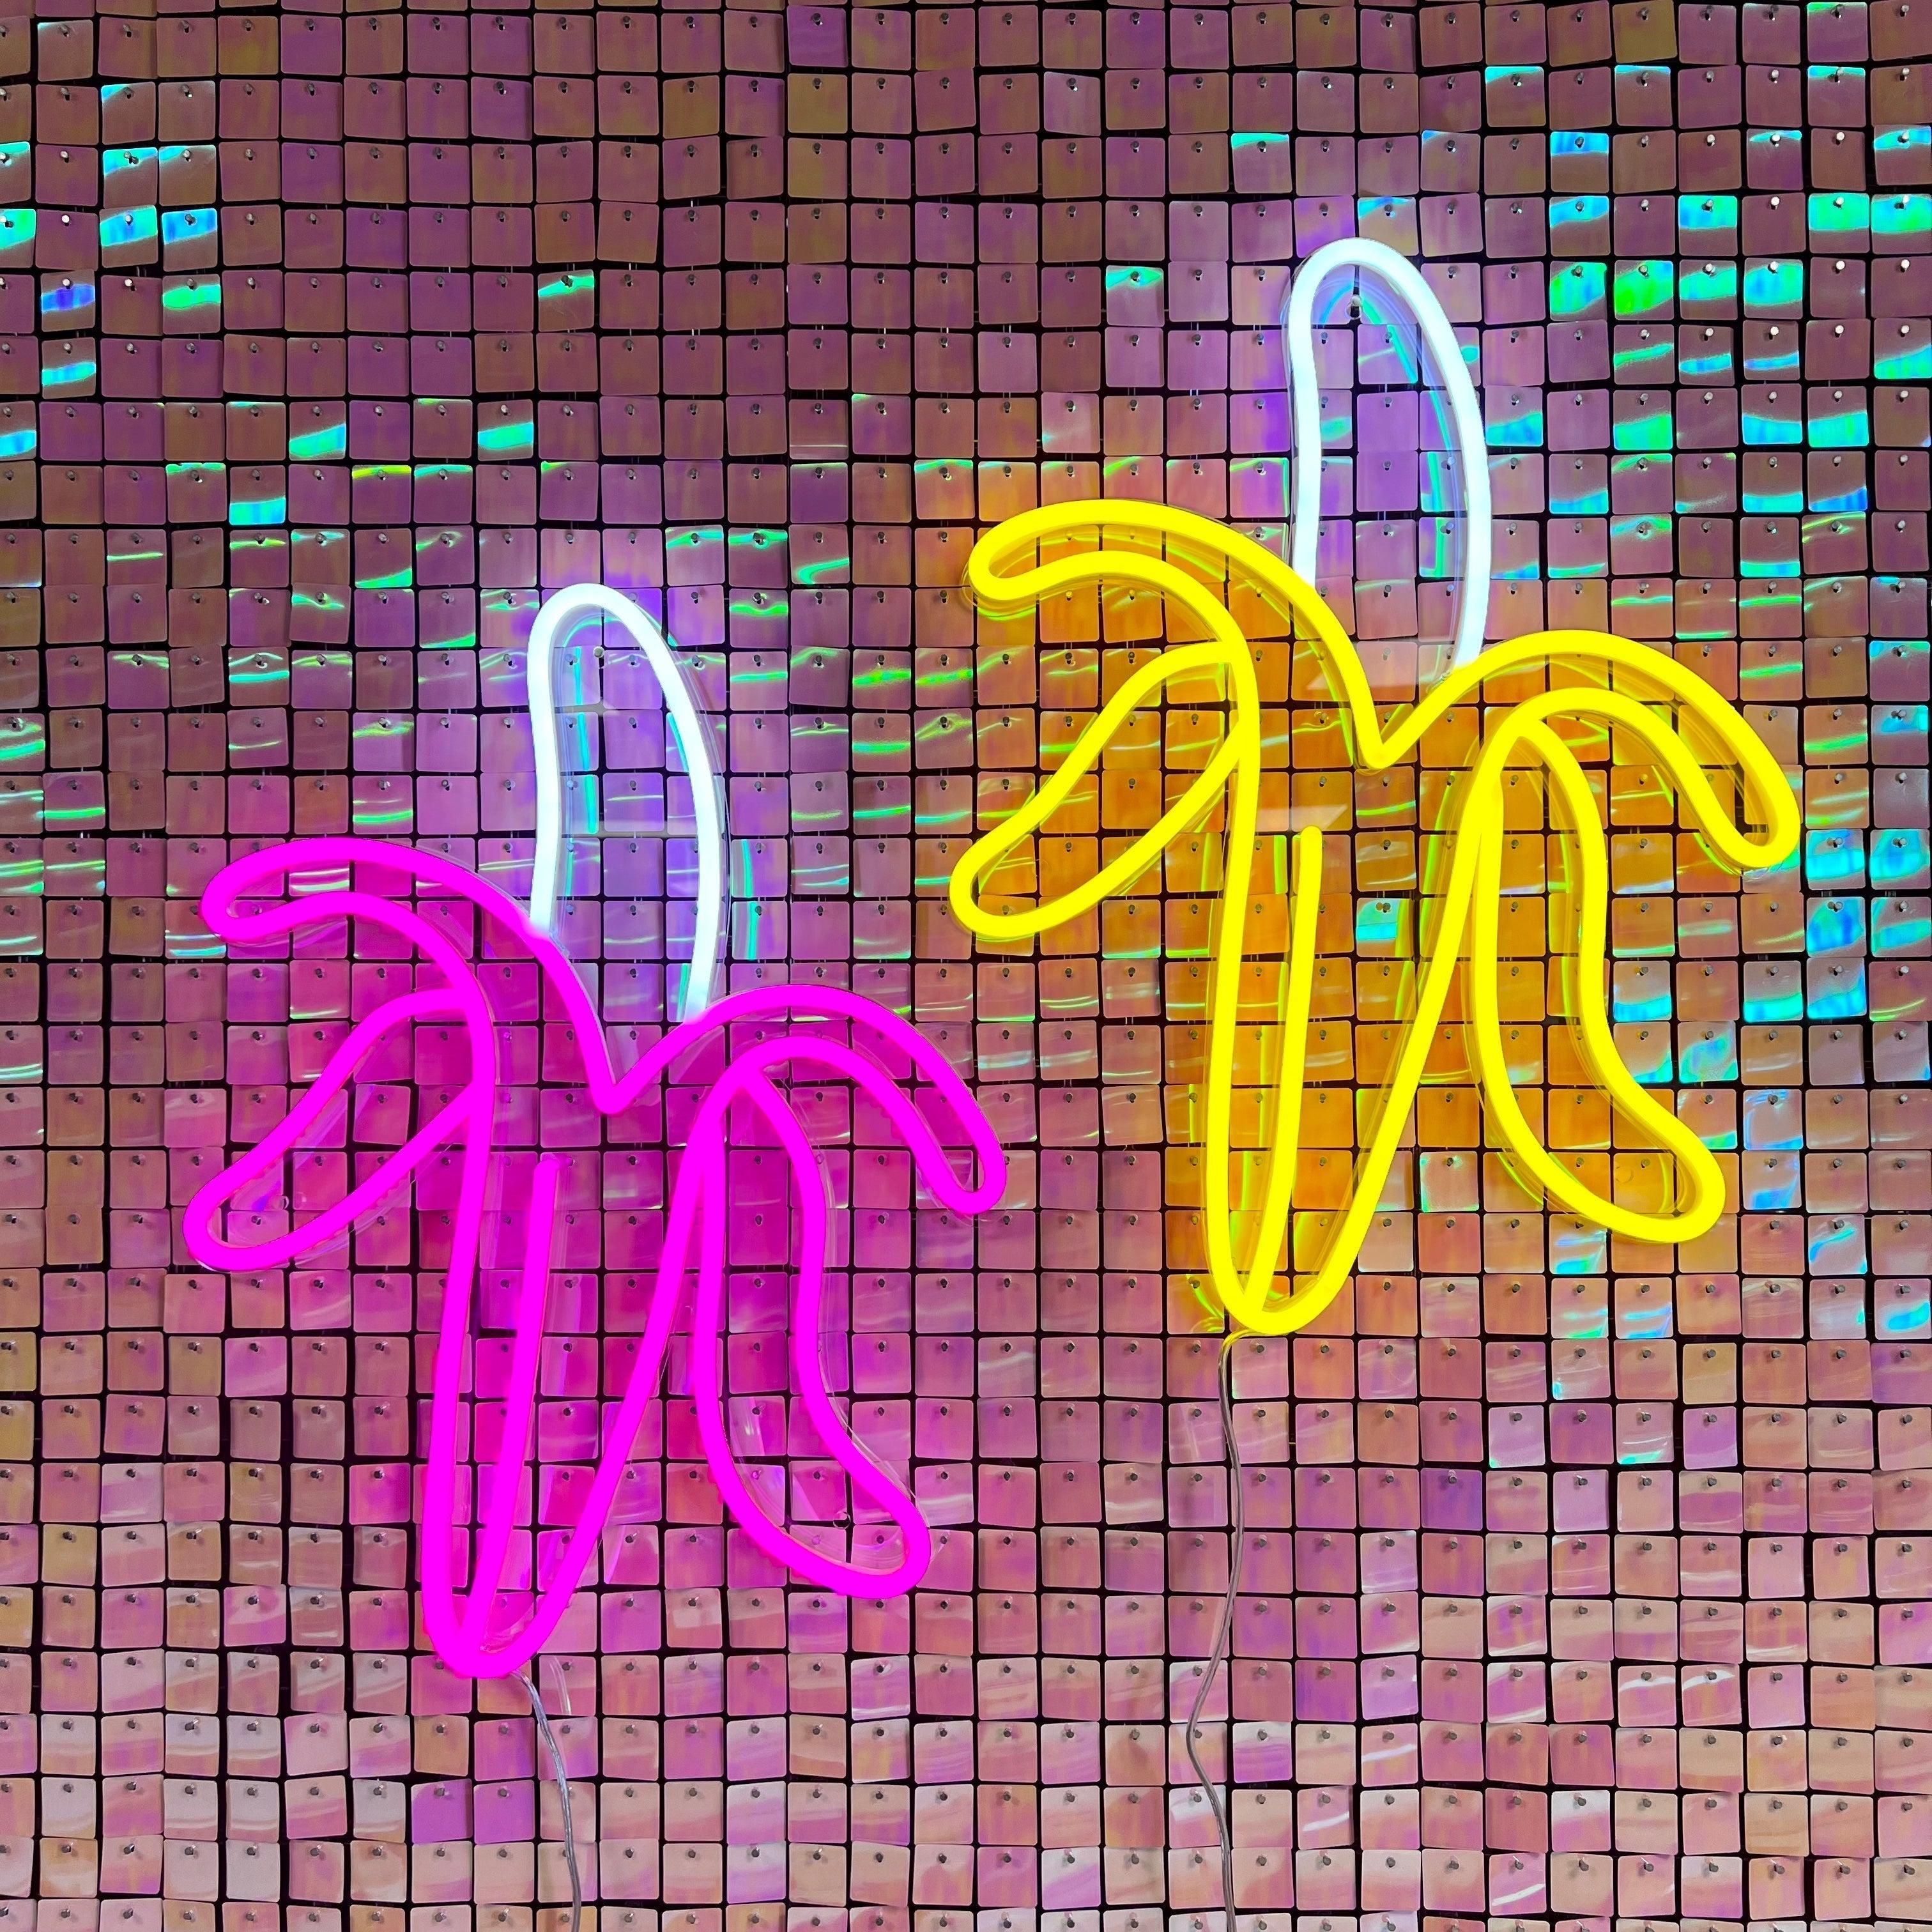 Gi et friskt pust til ditt rom med 'banan' led neonskilt i en fantastisk sitronfarge. Dette lekne neonskiltet kombinerer stil med humor og lyser opp ethvert rom med sin varme glød. En stilfull dekorasjon som garantert vil tiltrekke oppmerksomhet.